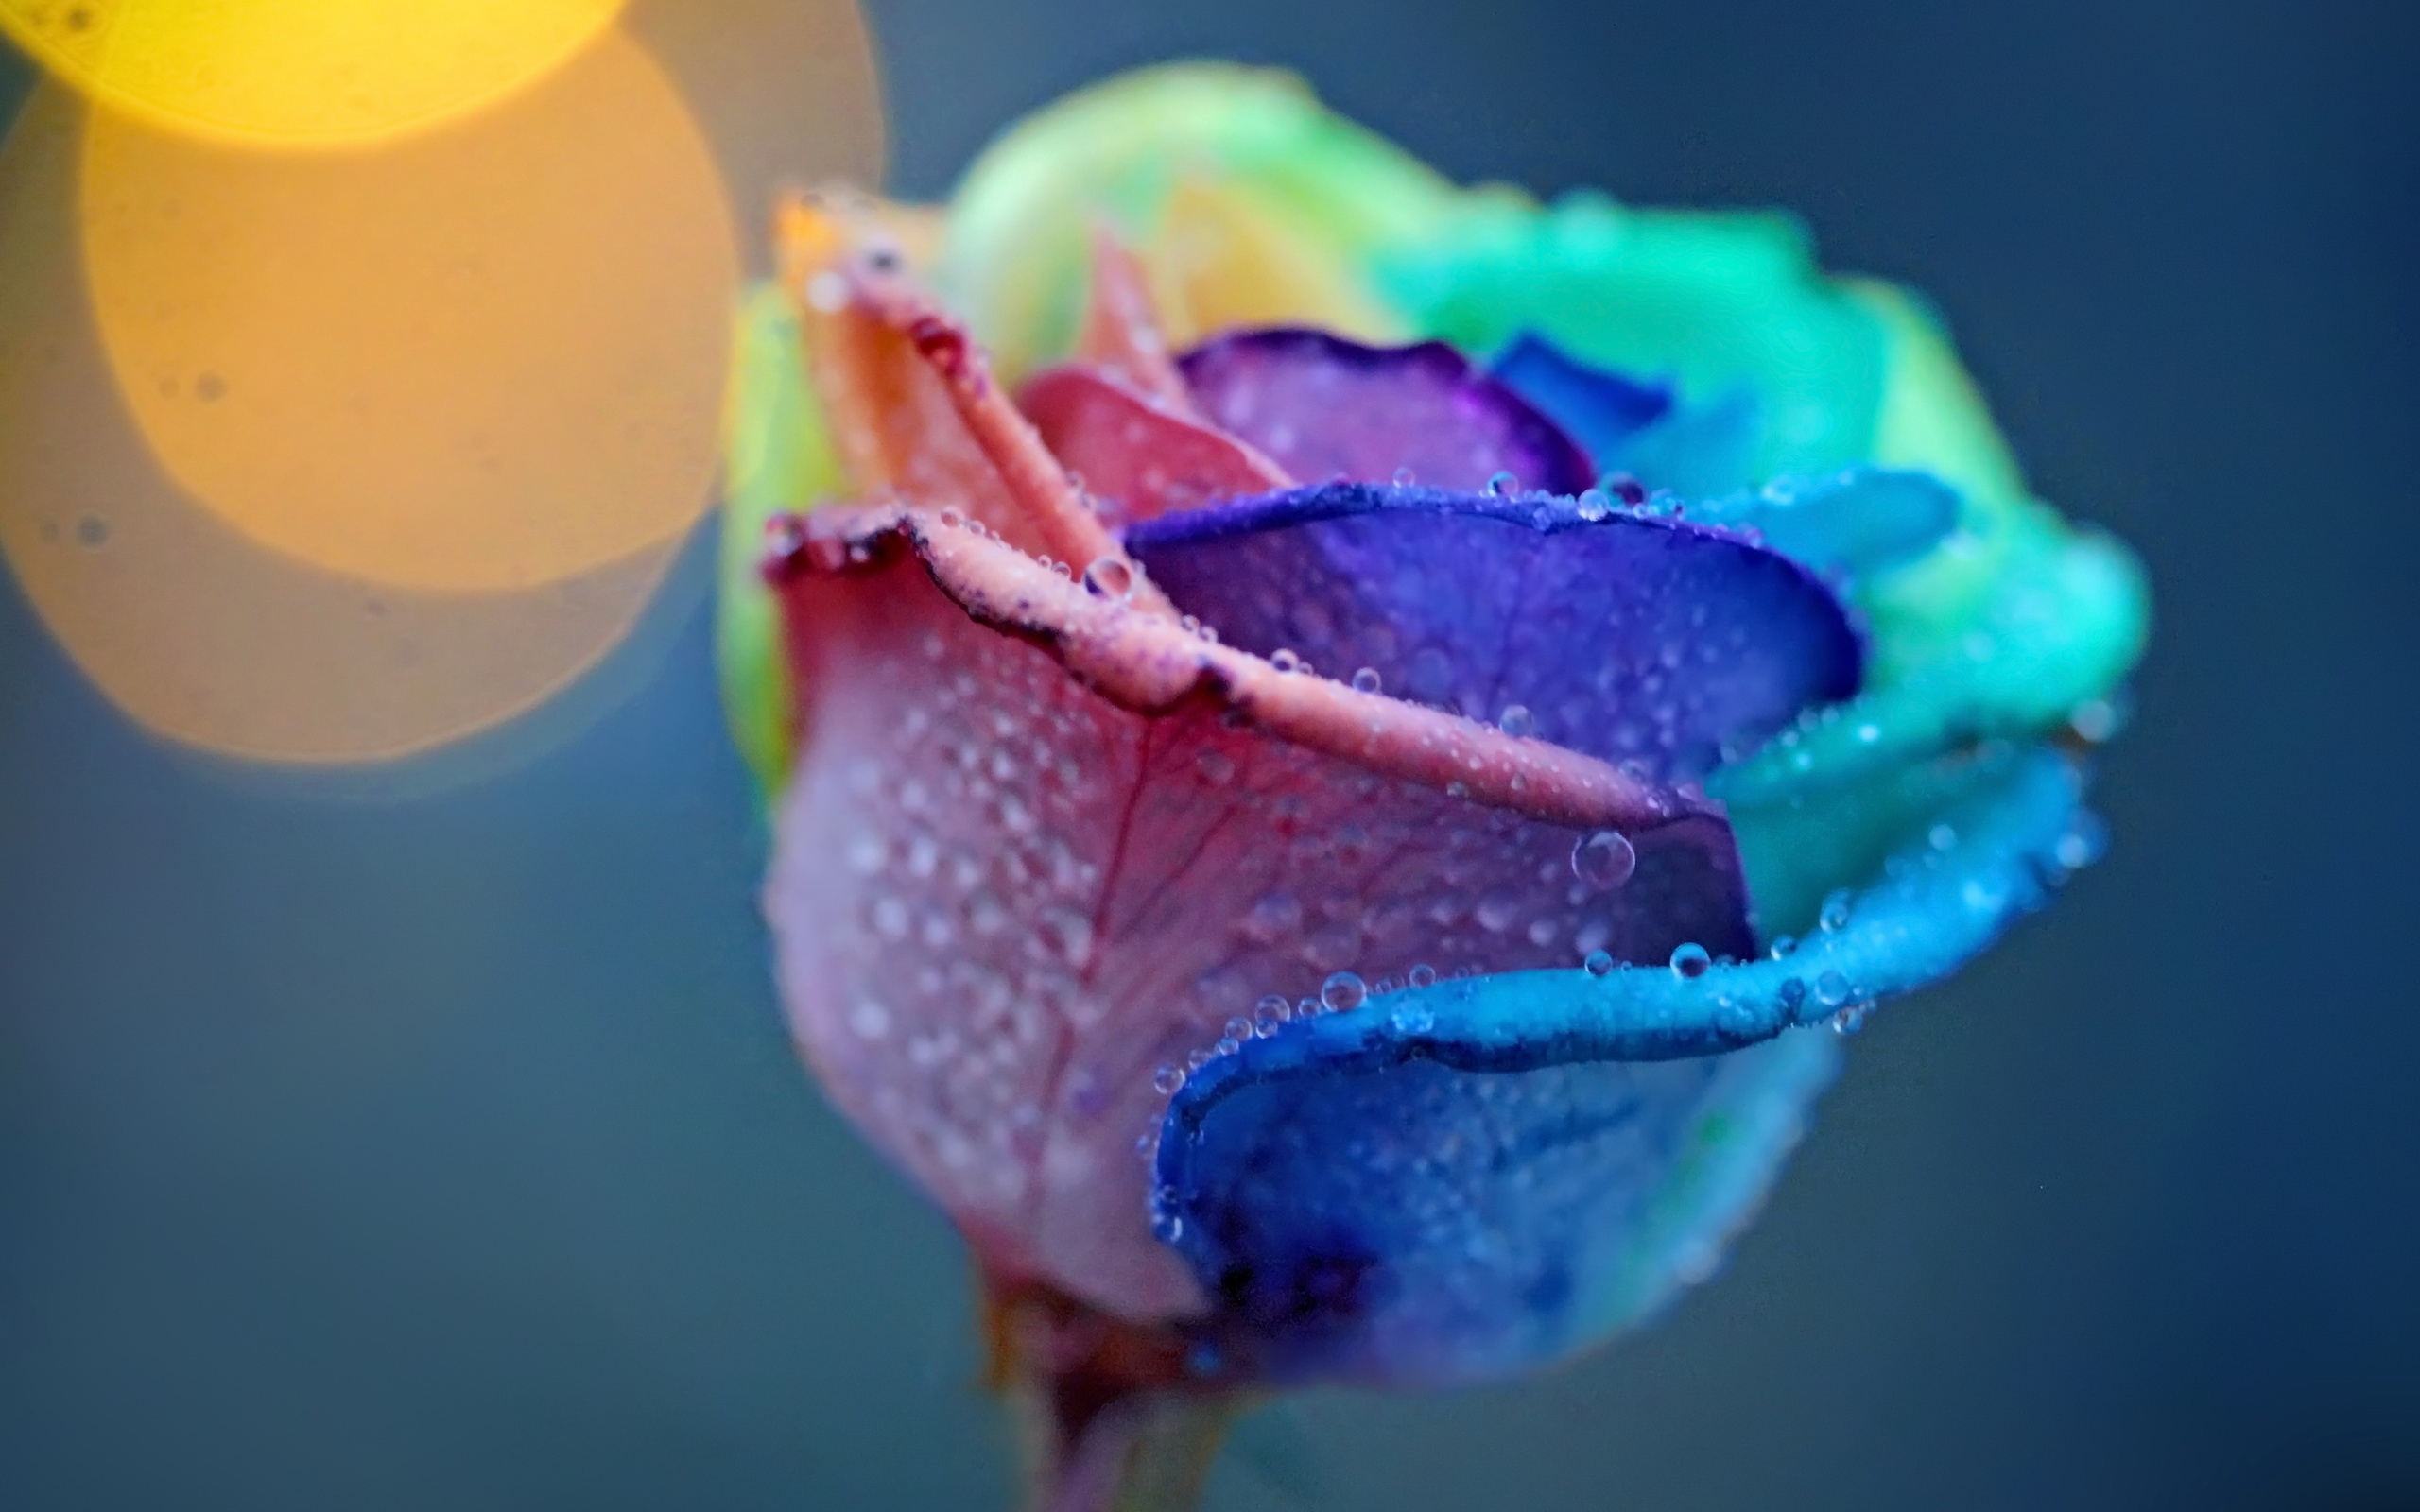 Цветок с разноцветными лепестками